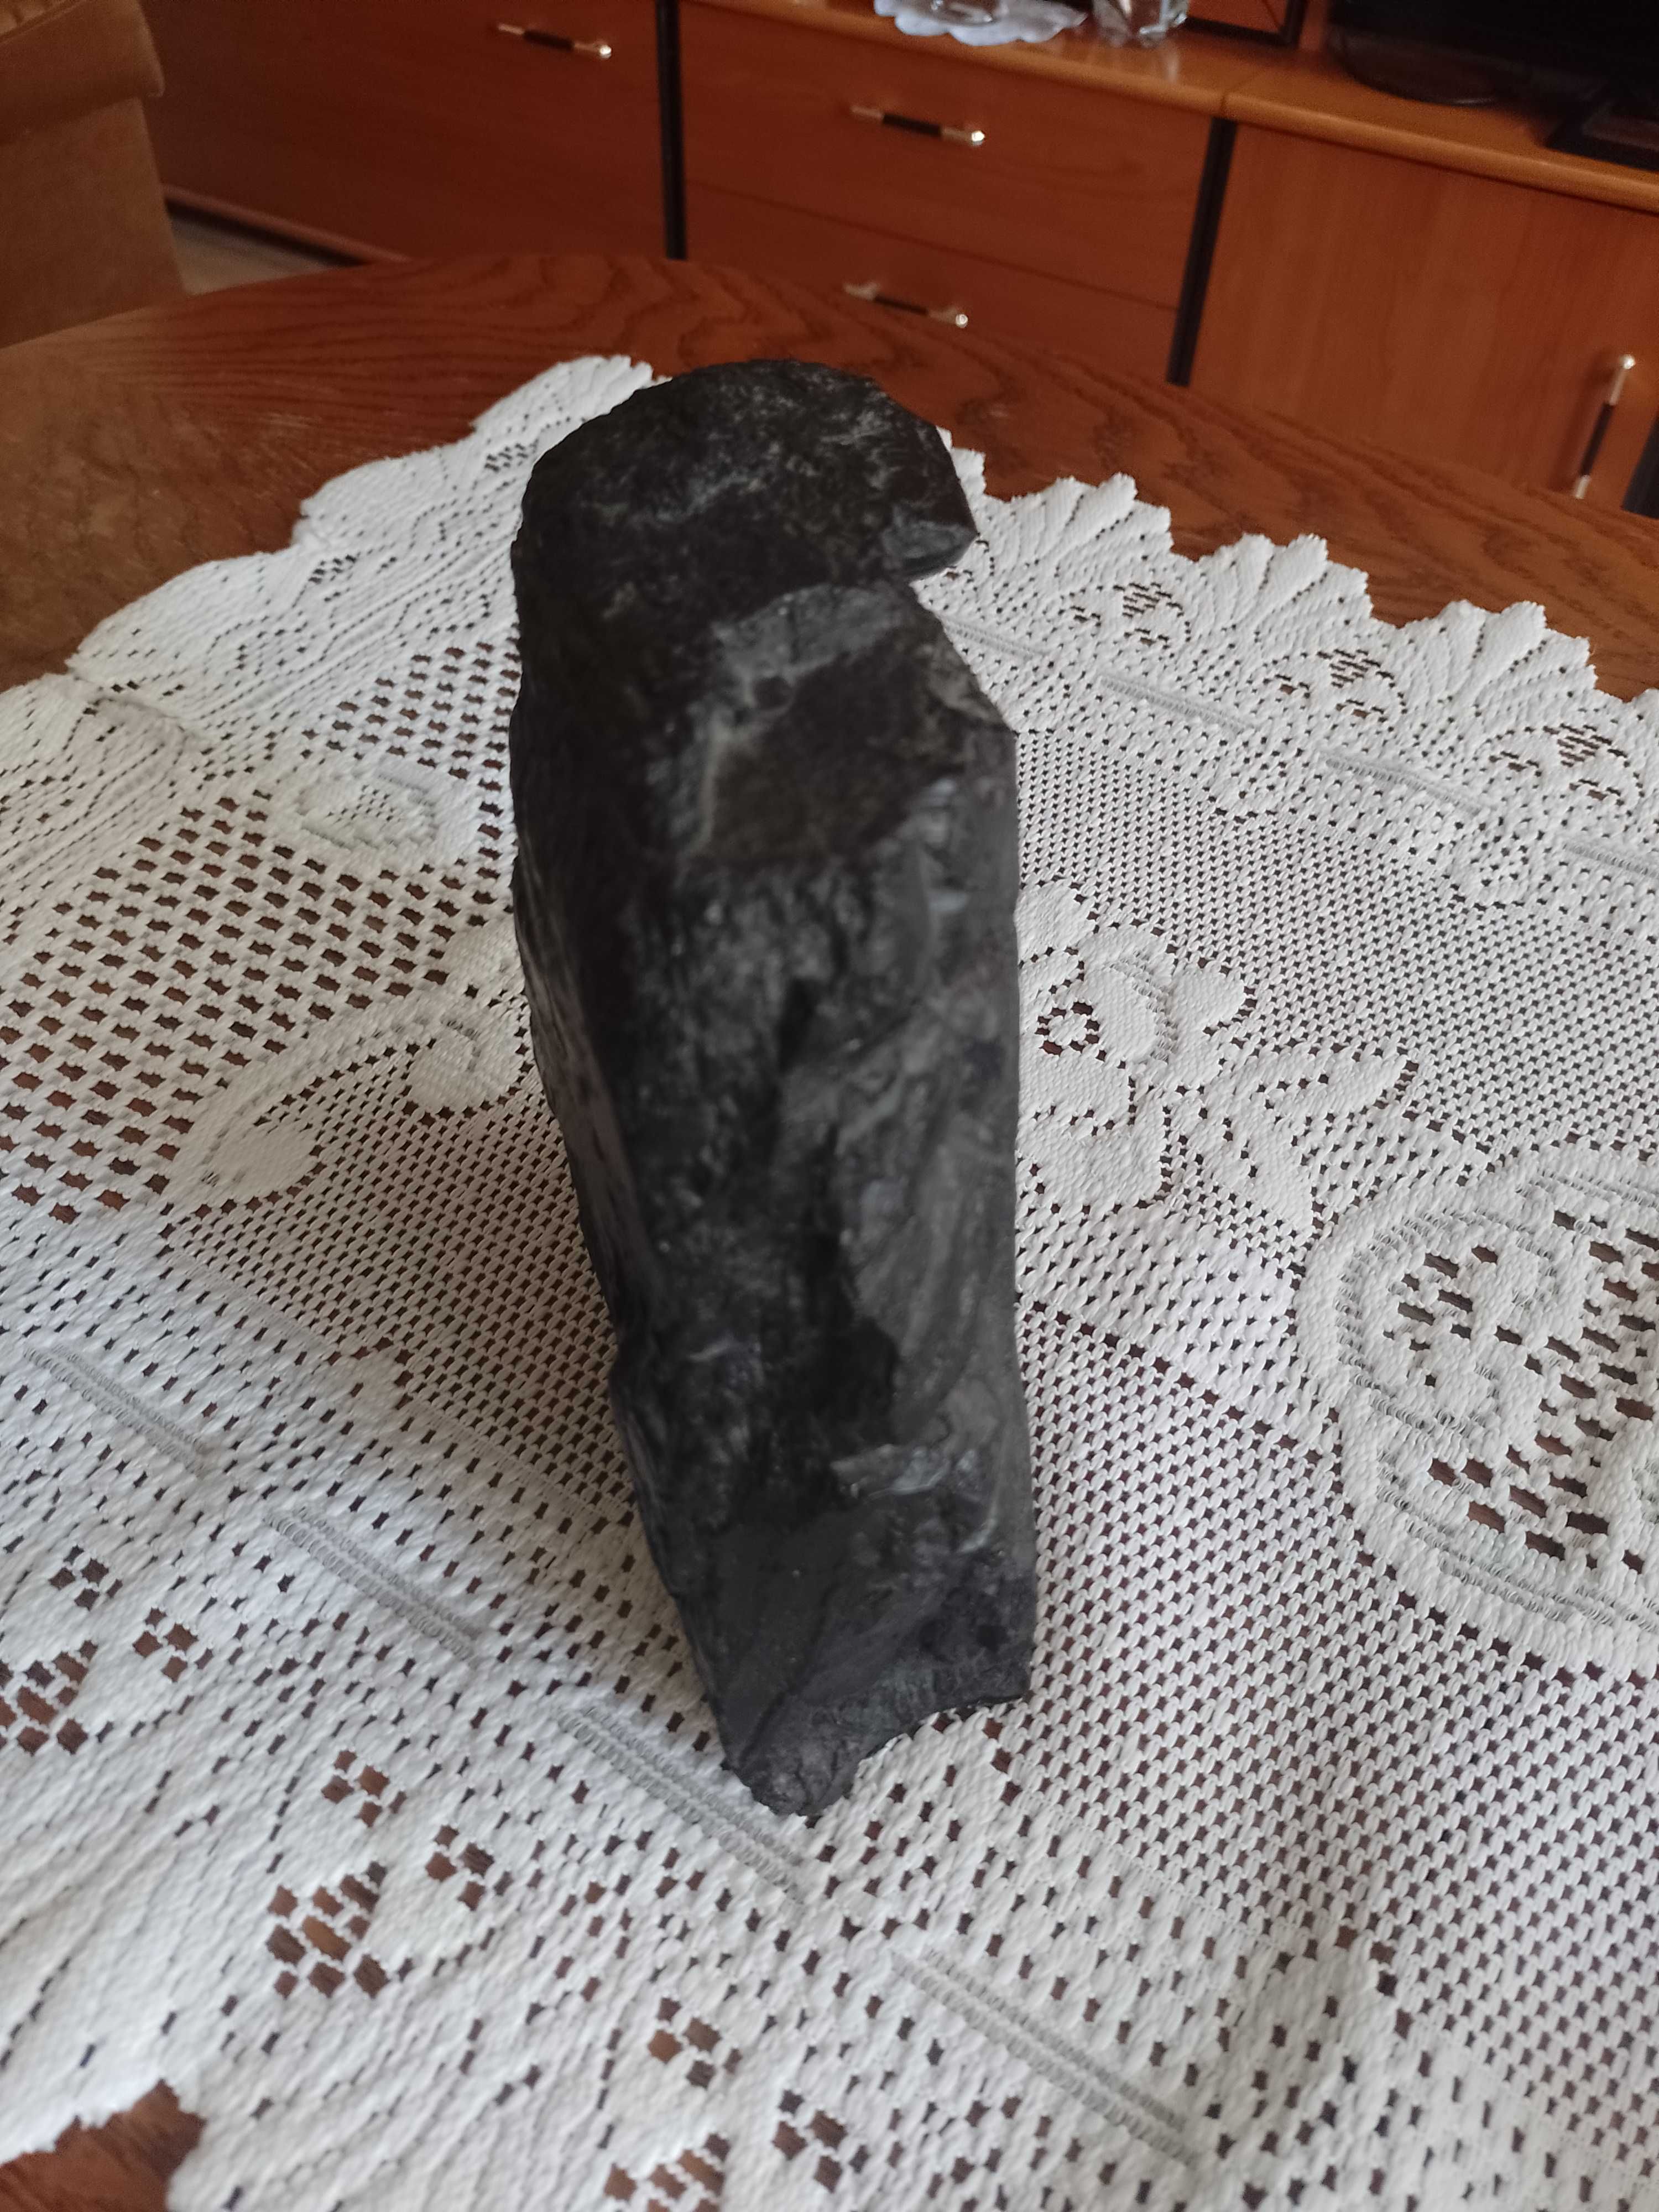 Rzeźba przedstawiająca górnika, wykonana z węgla,